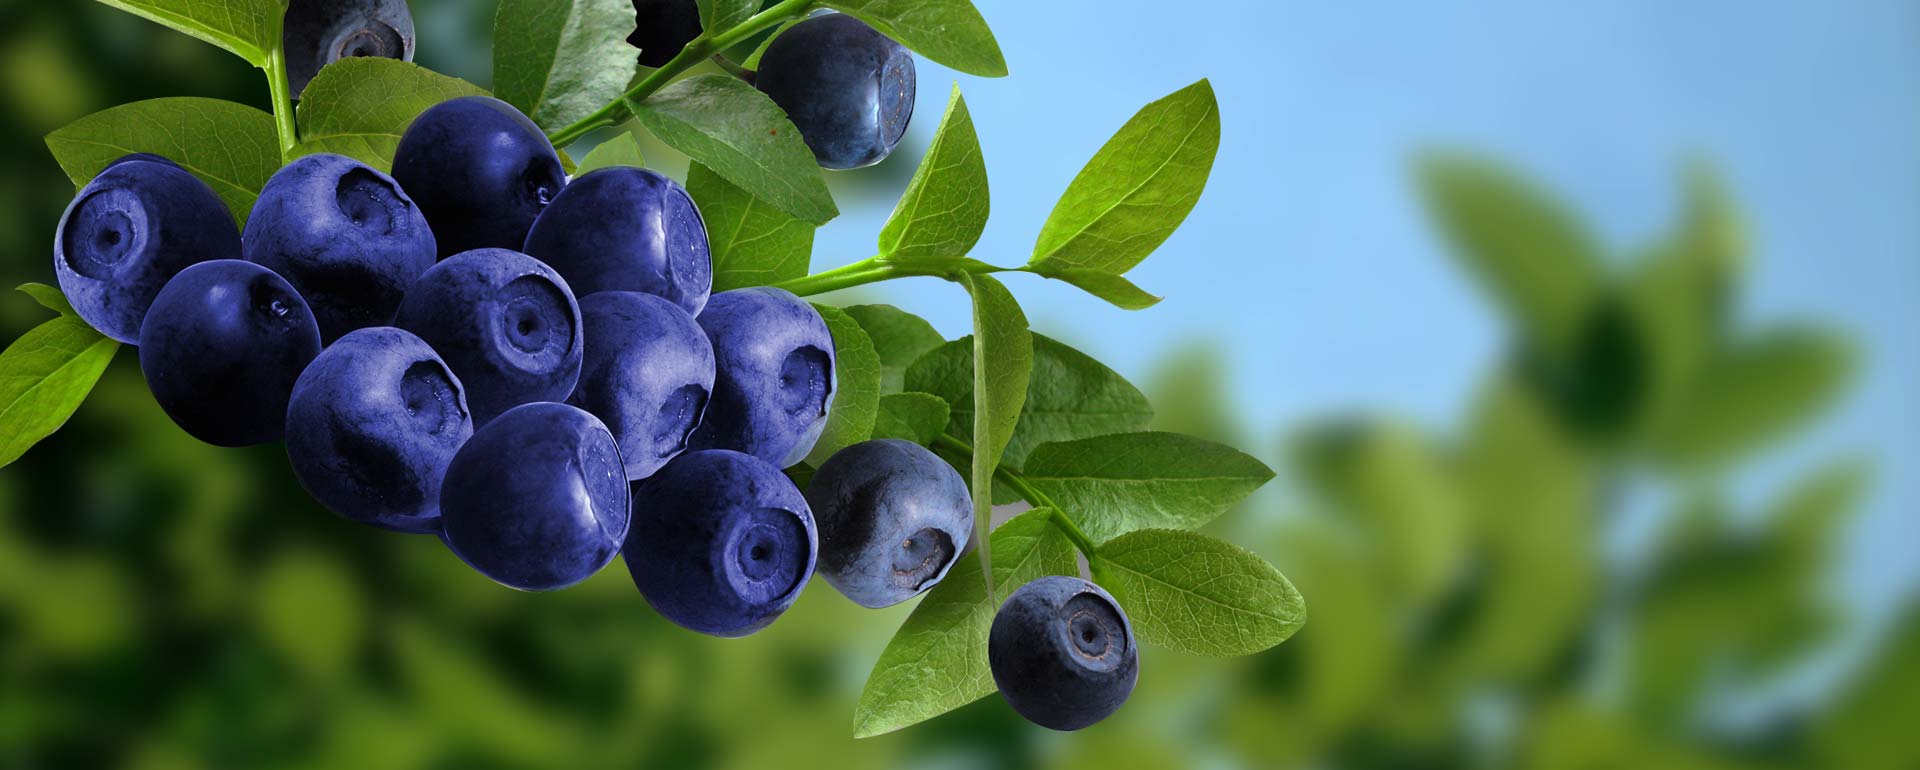 优质蓝莓苗就在祝康蓝莓种植 批发供应蓝莓苗